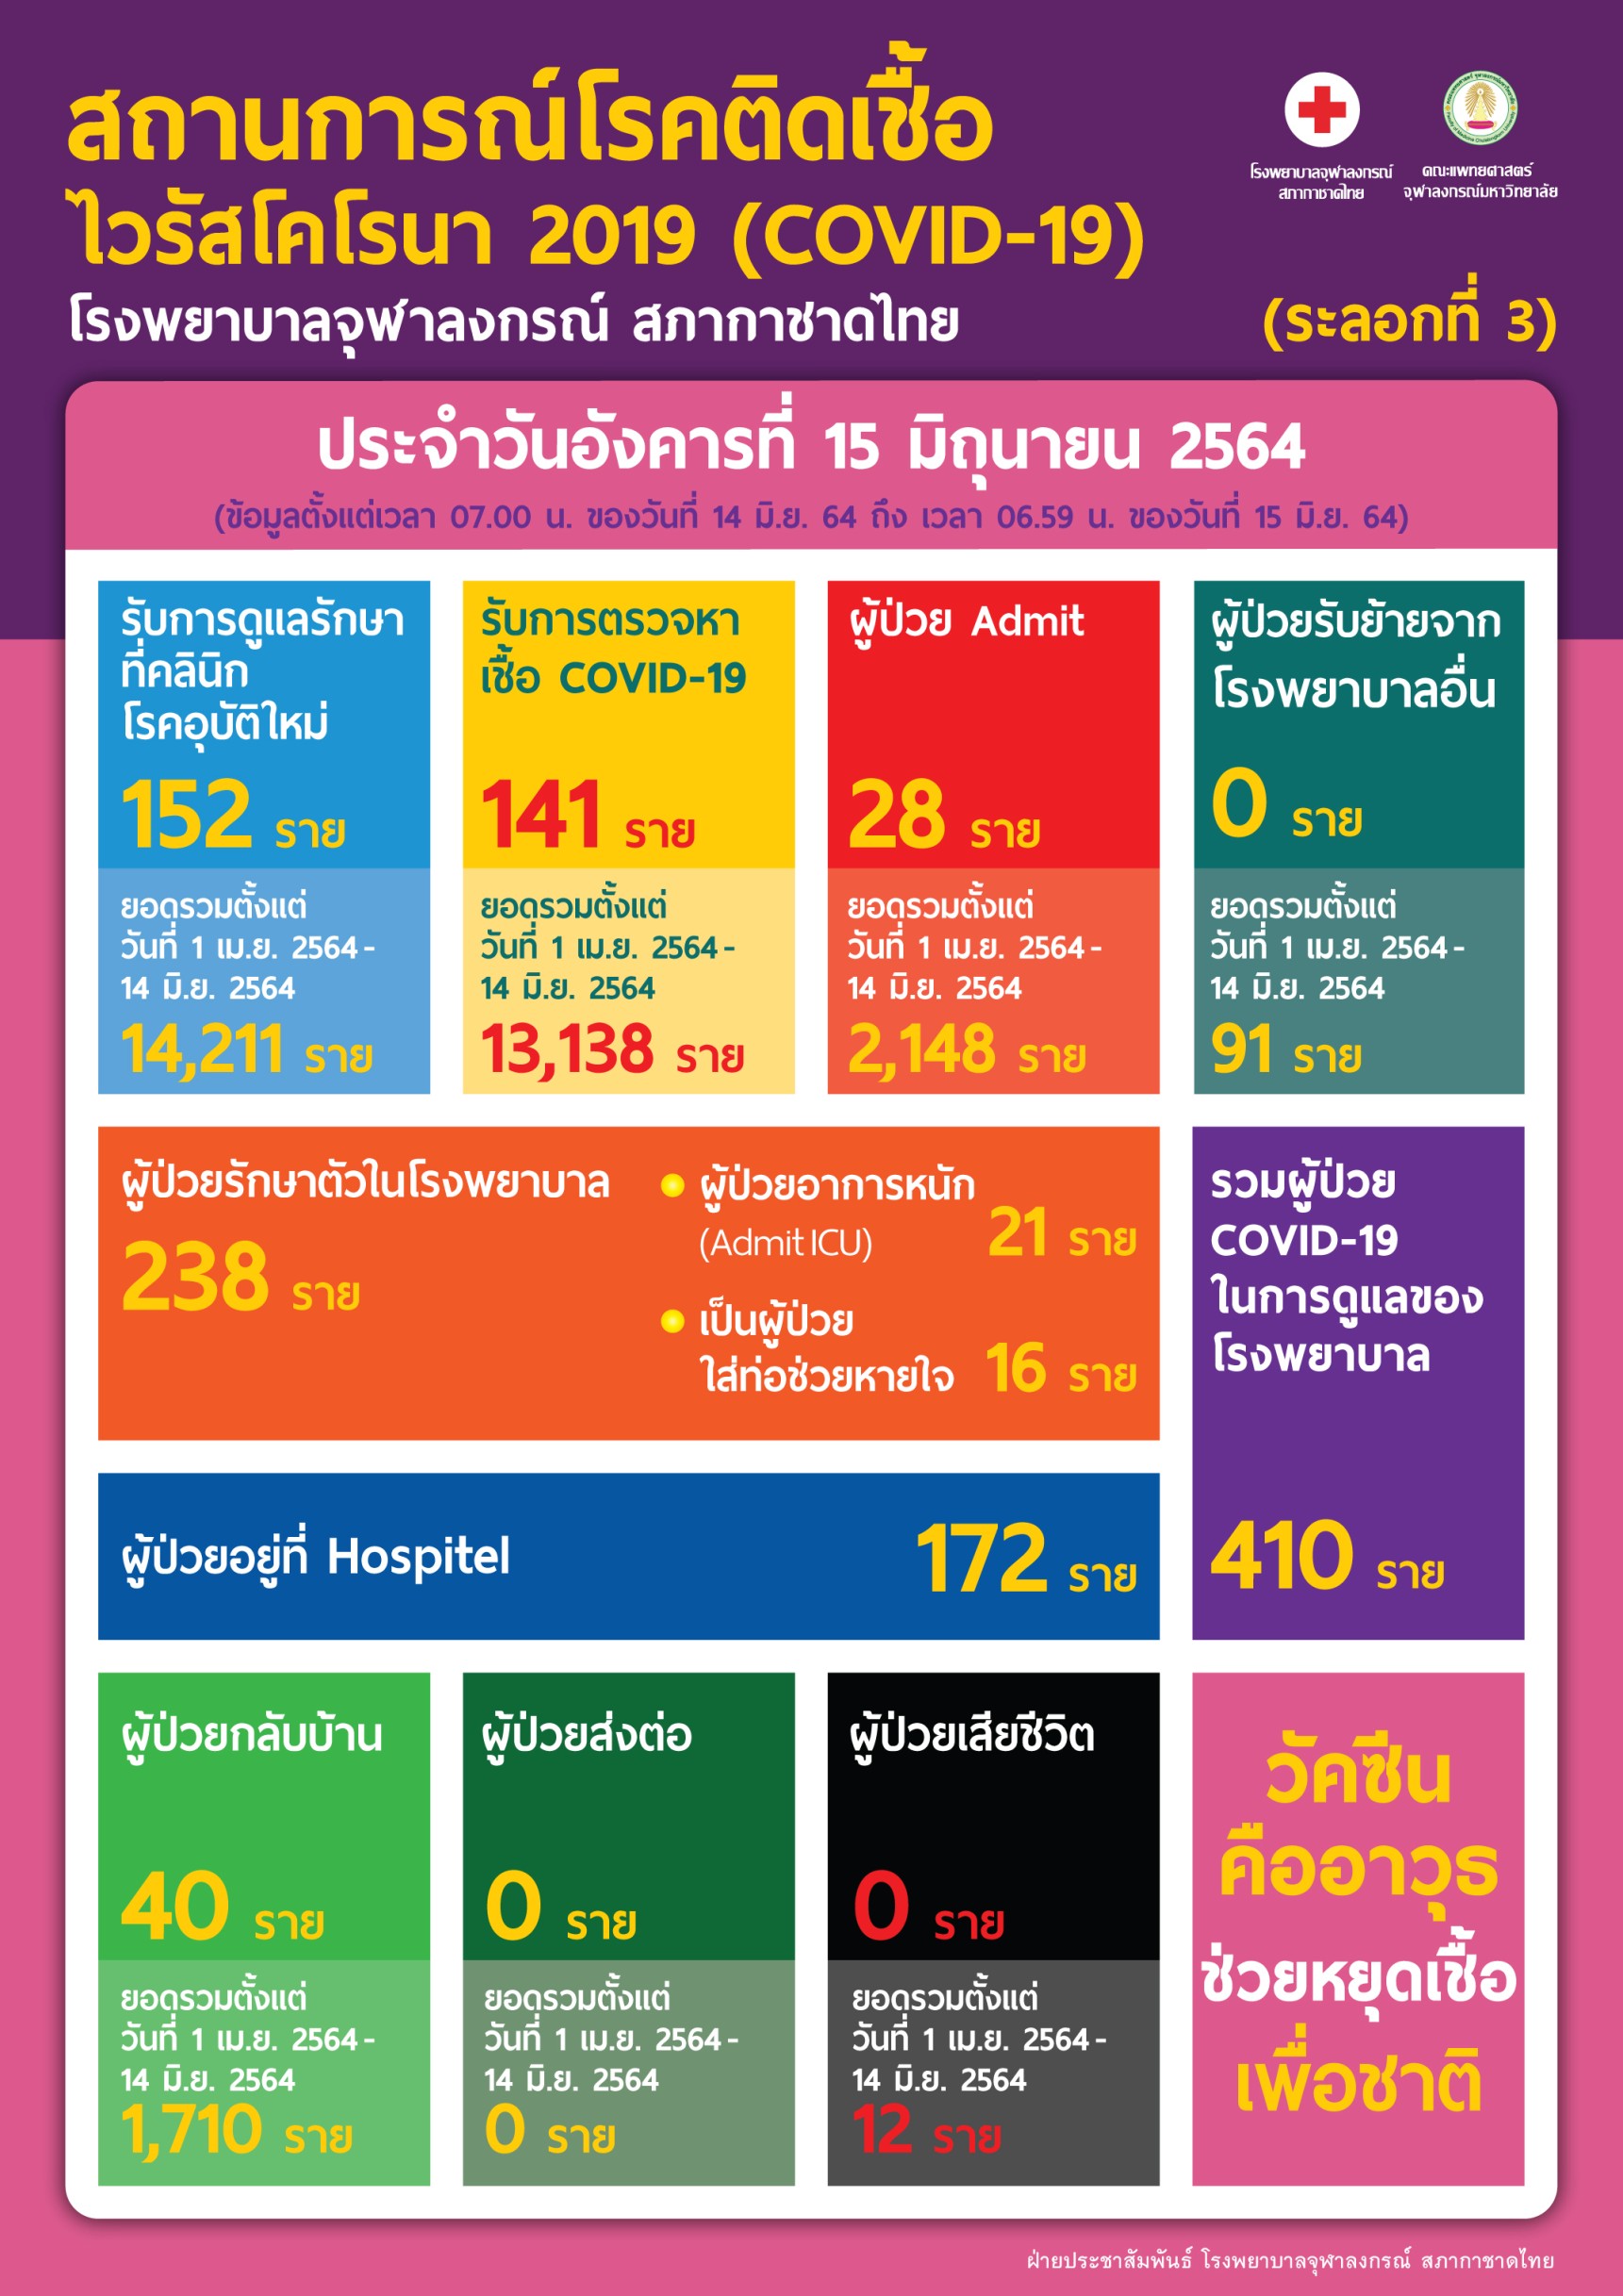 สถานการณ์โรคติดเชื้อไวรัสโคโรนา 2019 (COVID-19) (ระลอกที่ 3) โรงพยาบาลจุฬลงกรณ์ สภากาชาดไทย ประจำวันอังคารที่ 15 มิถุนายน 2564